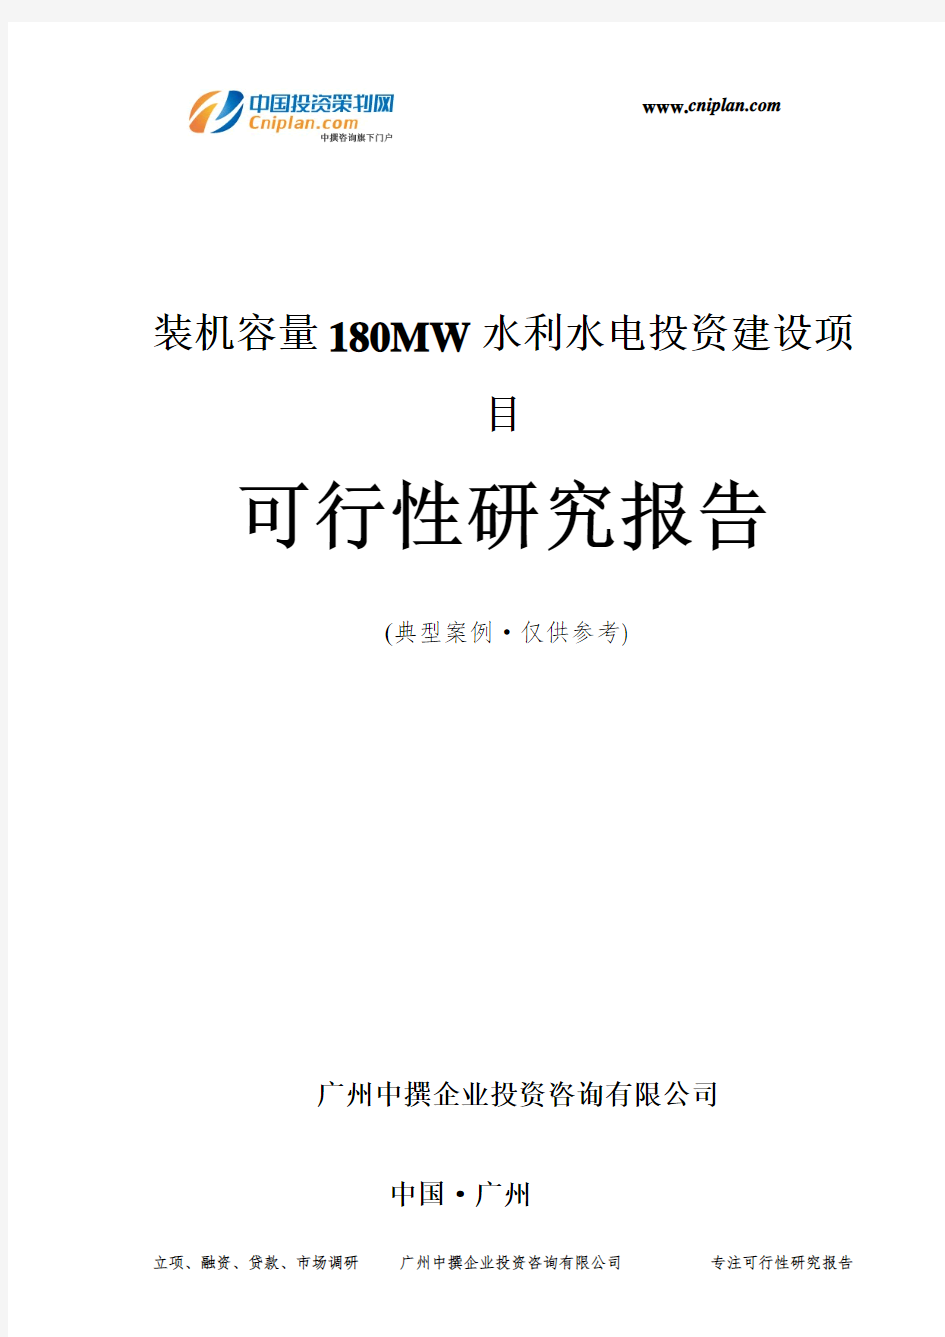 装机容量180MW水利水电投资建设项目可行性研究报告-广州中撰咨询